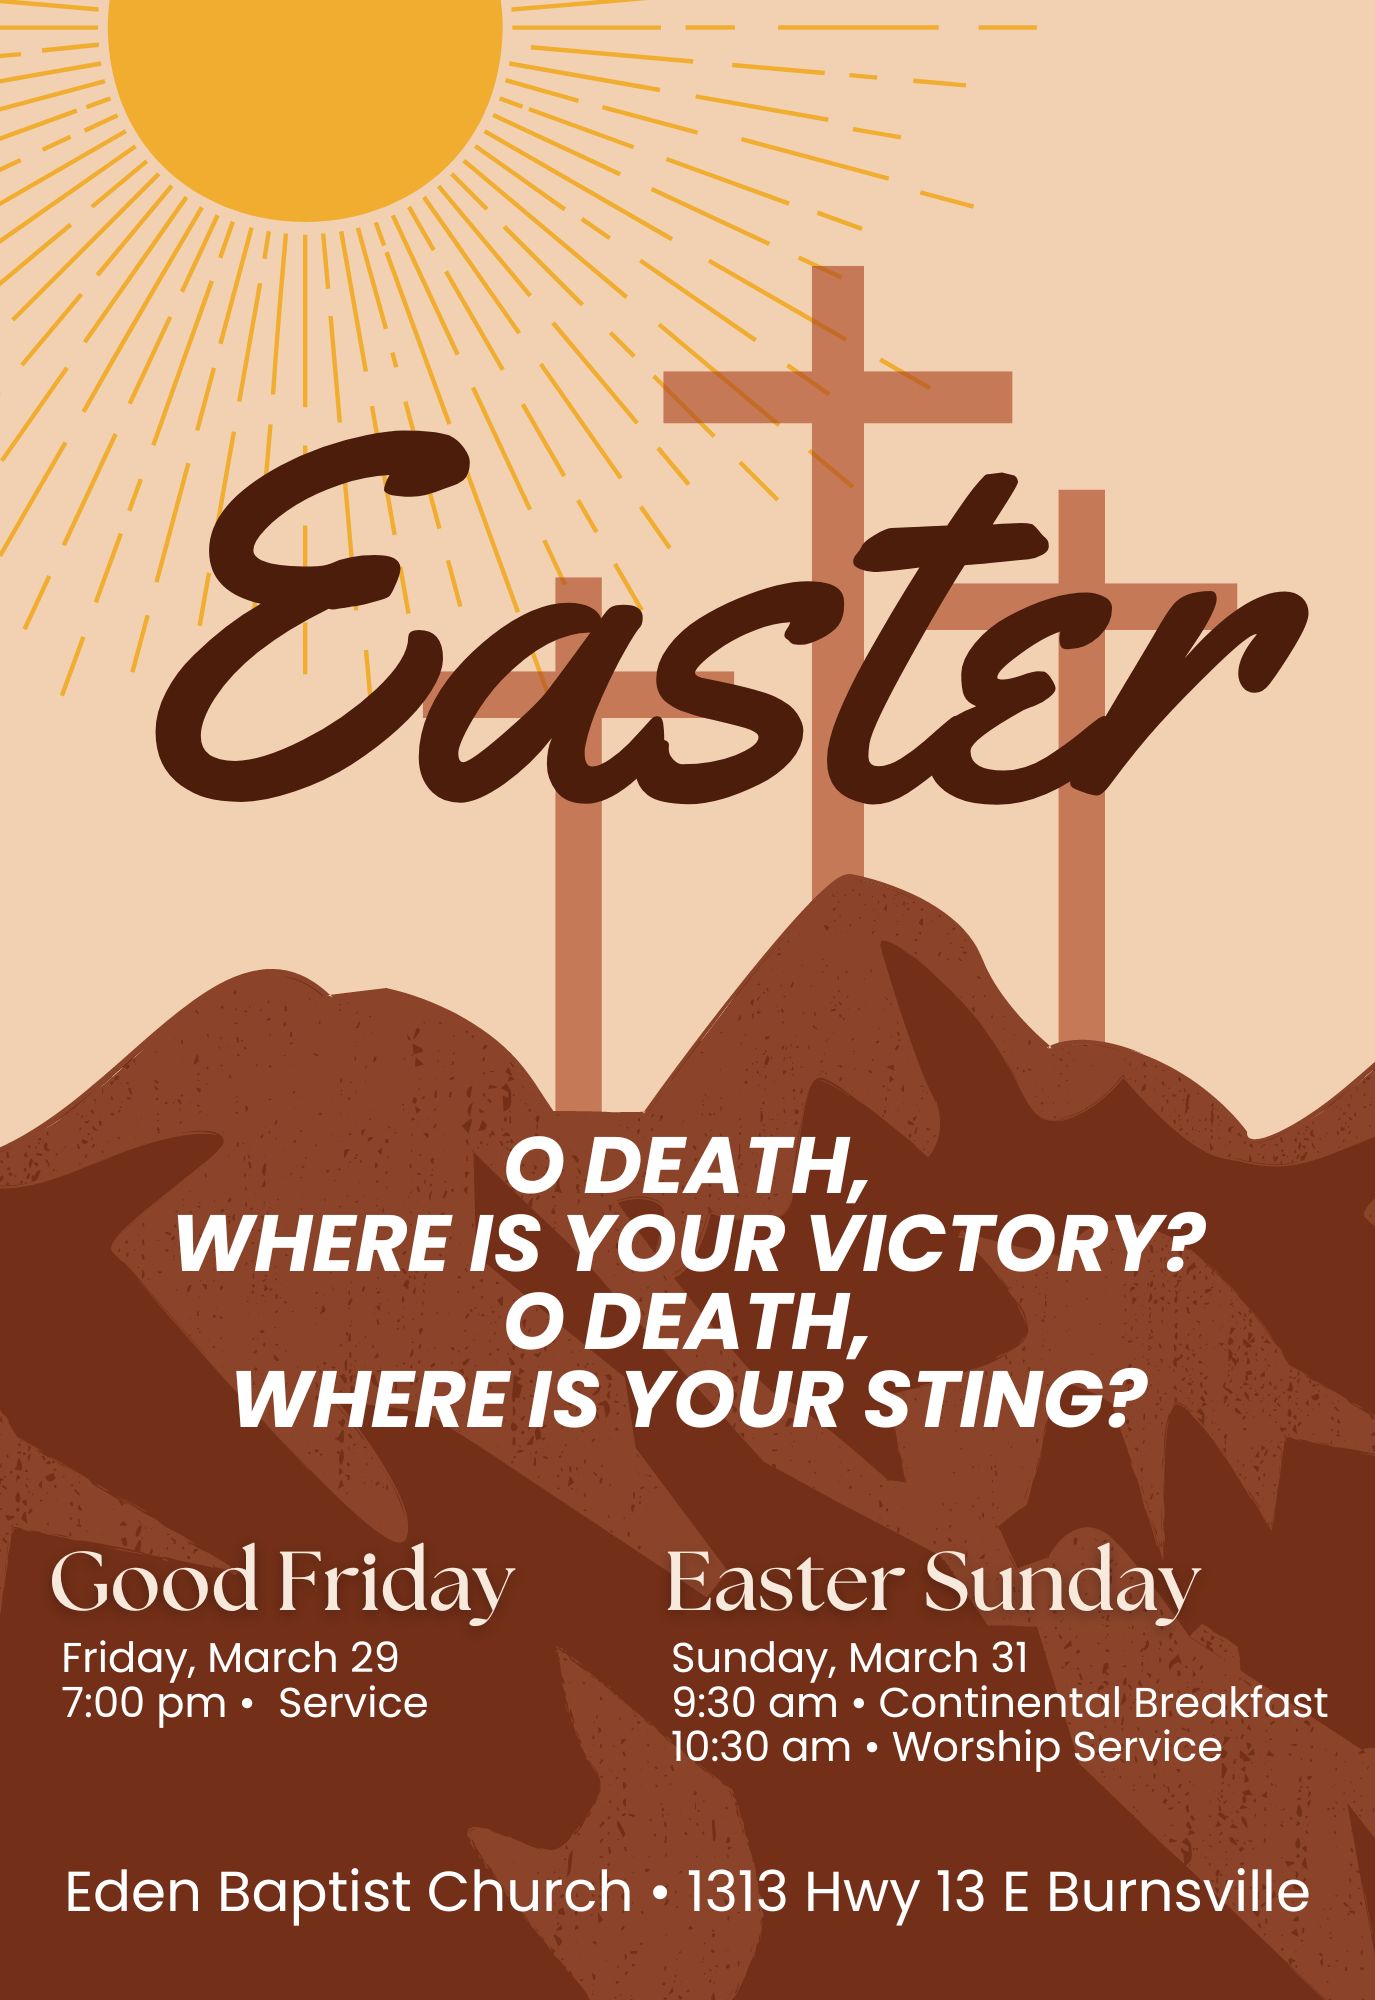 Easter invites